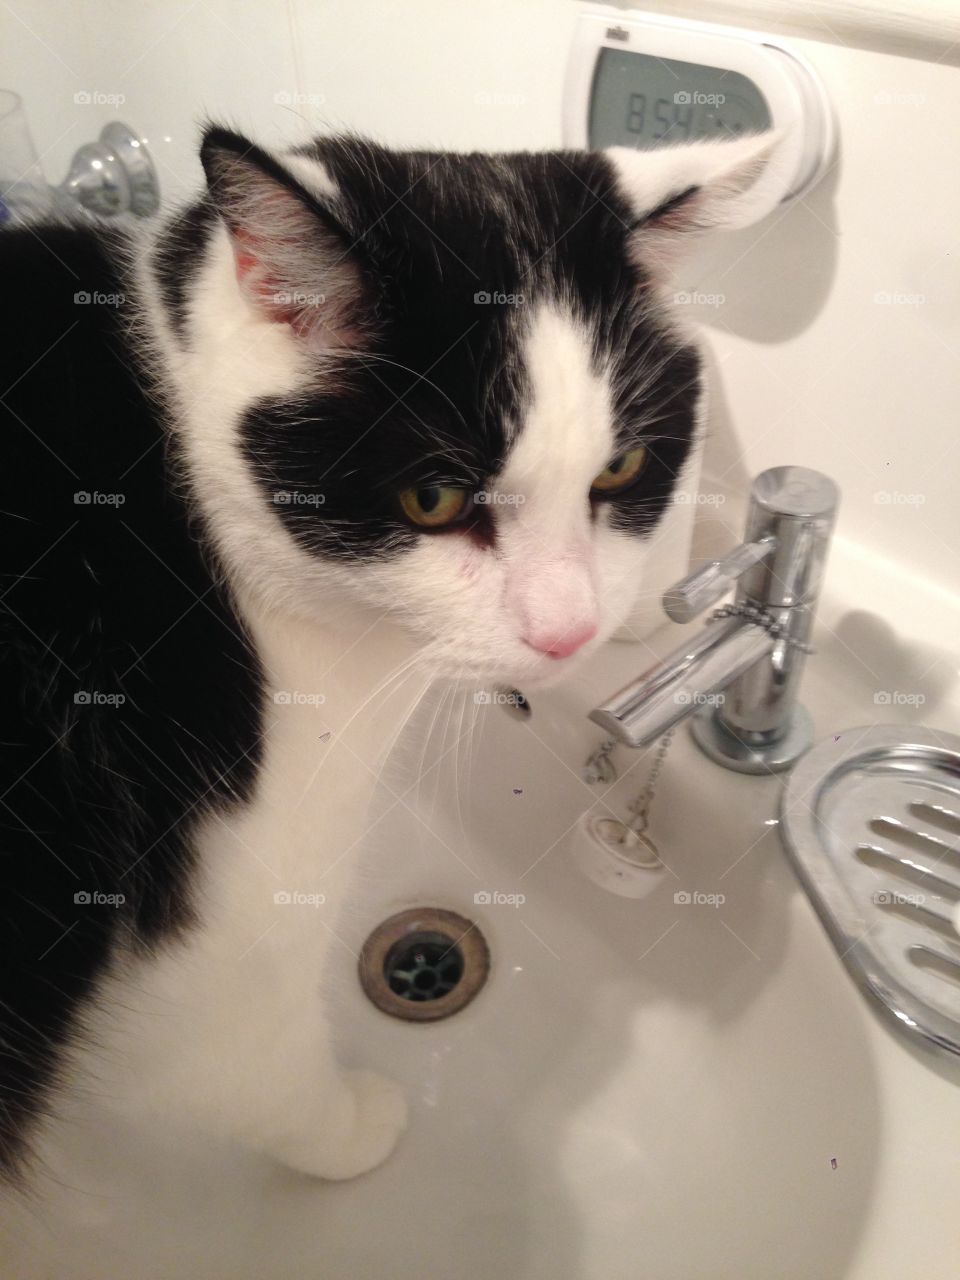 Thirsty cat. 